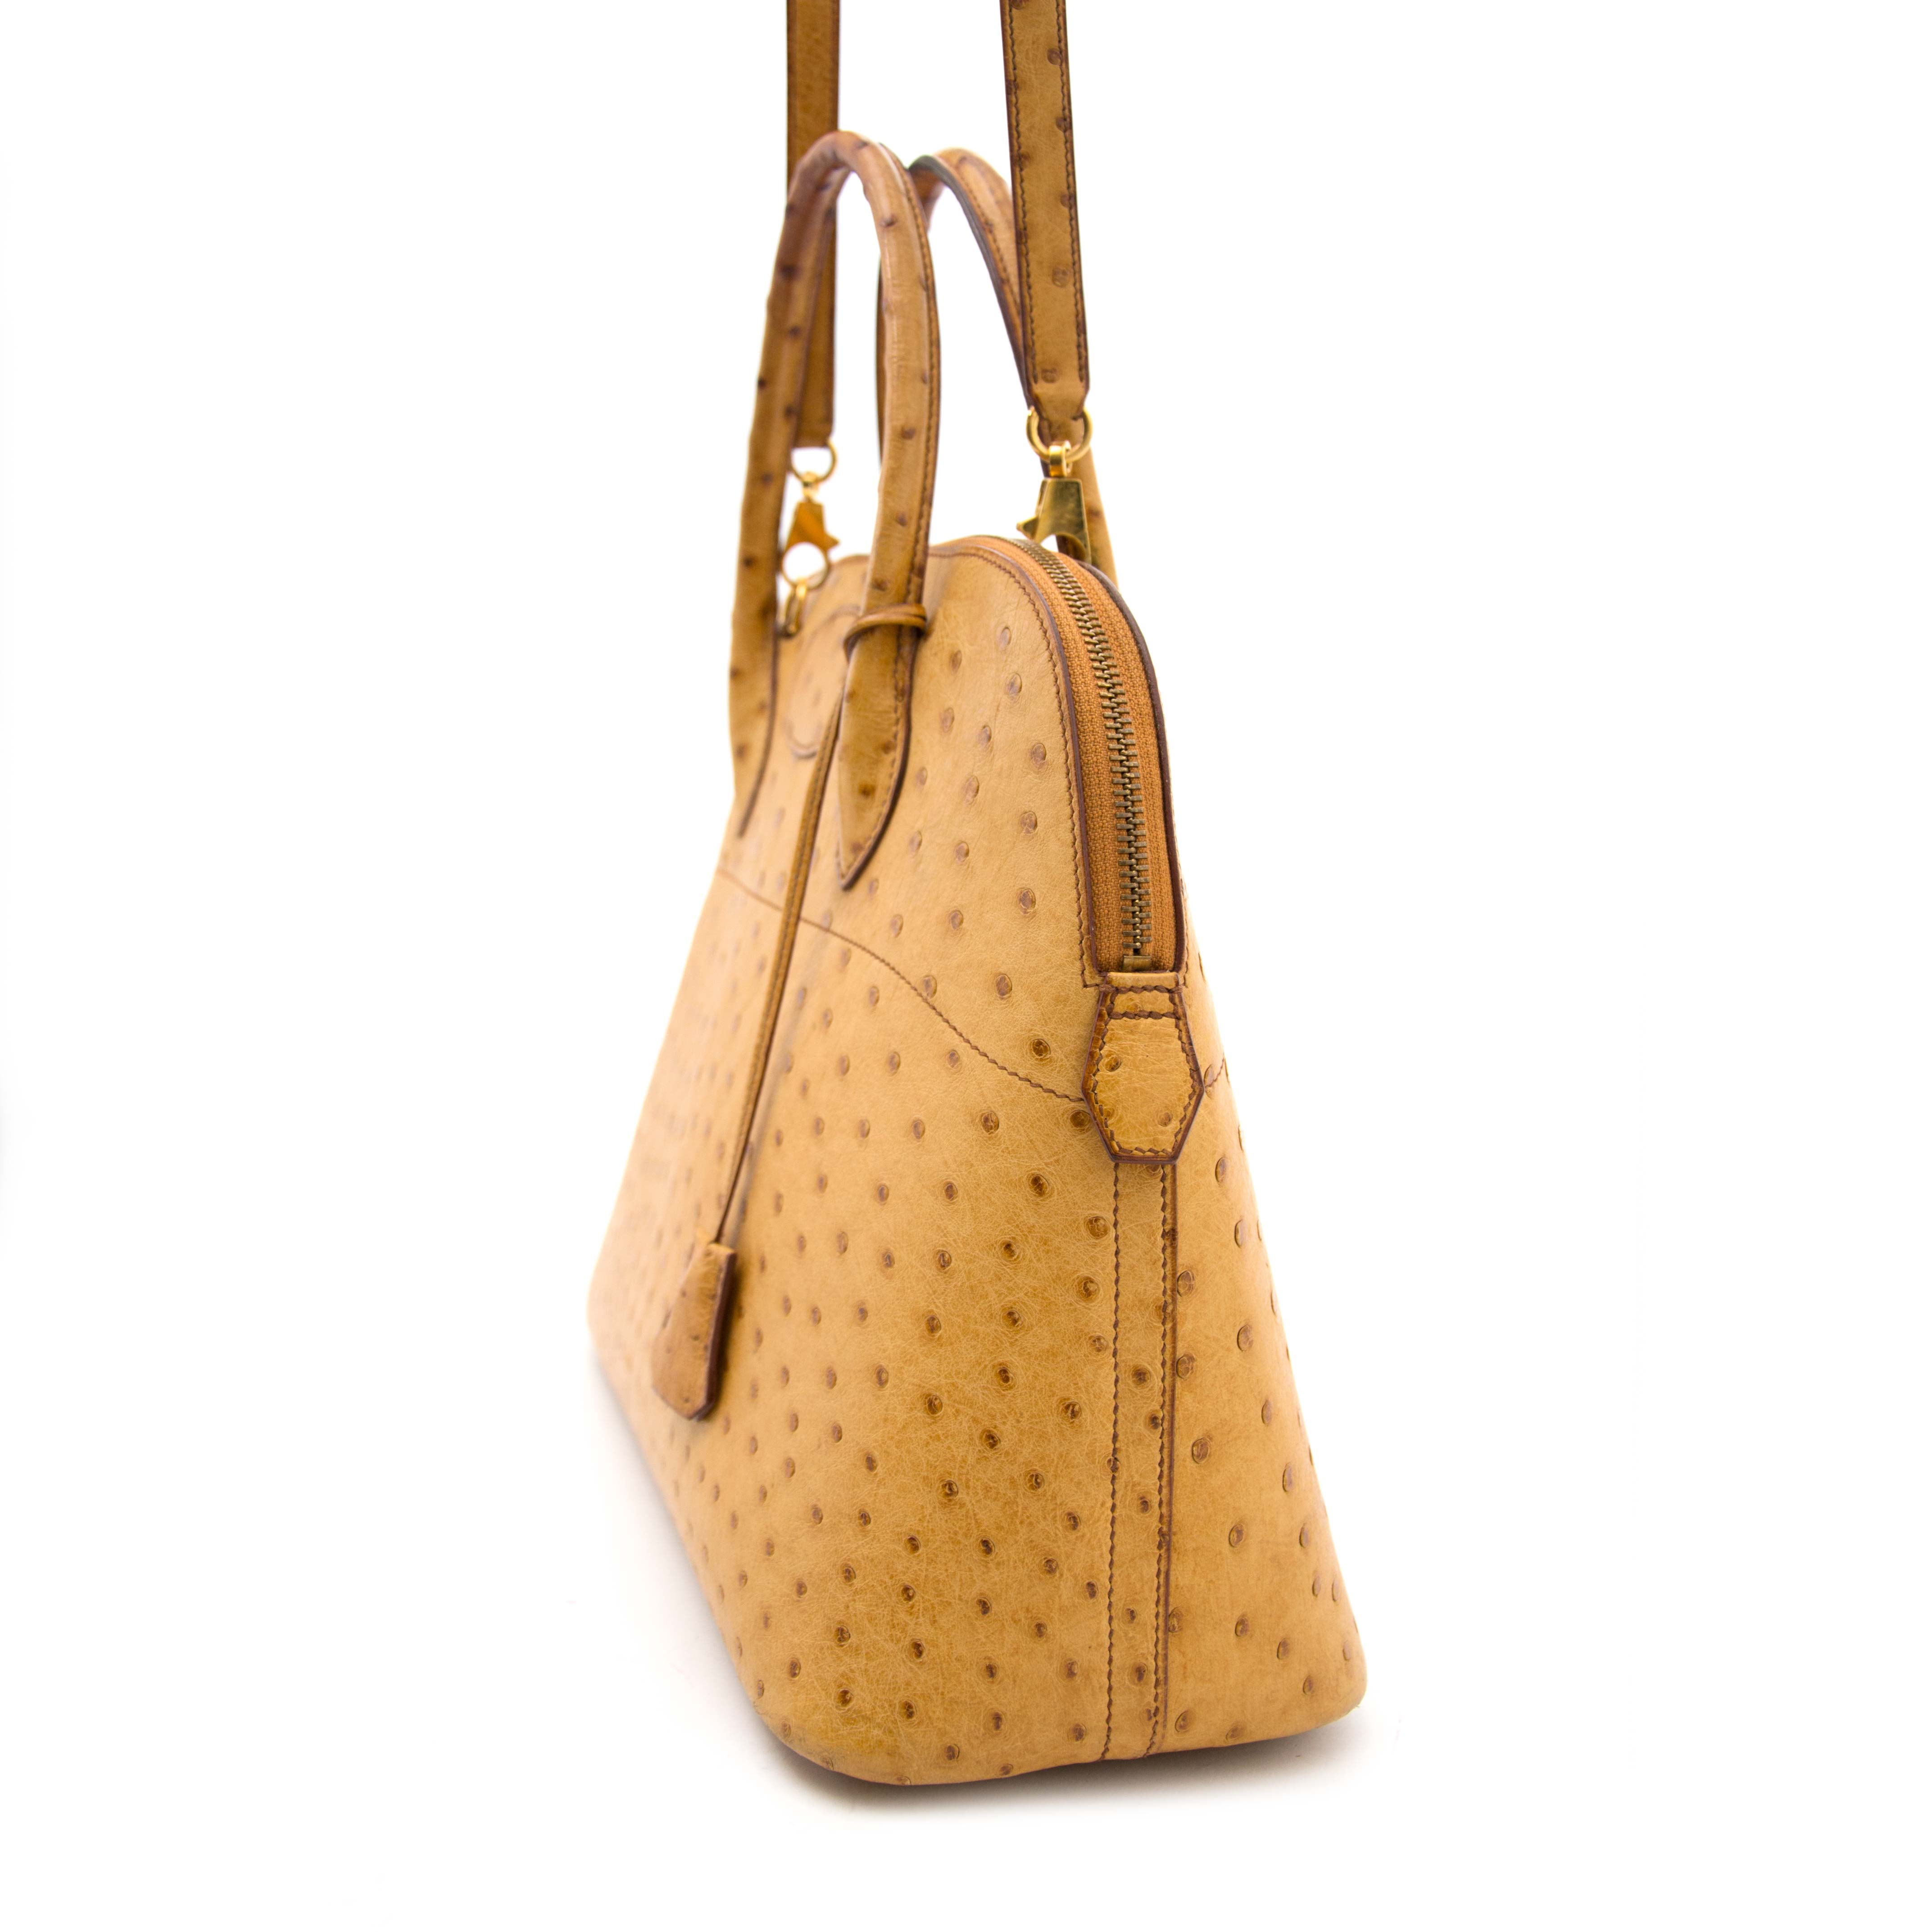 The Hermès Bolide Bag: The Original Travel Bag, Handbags and Accessories